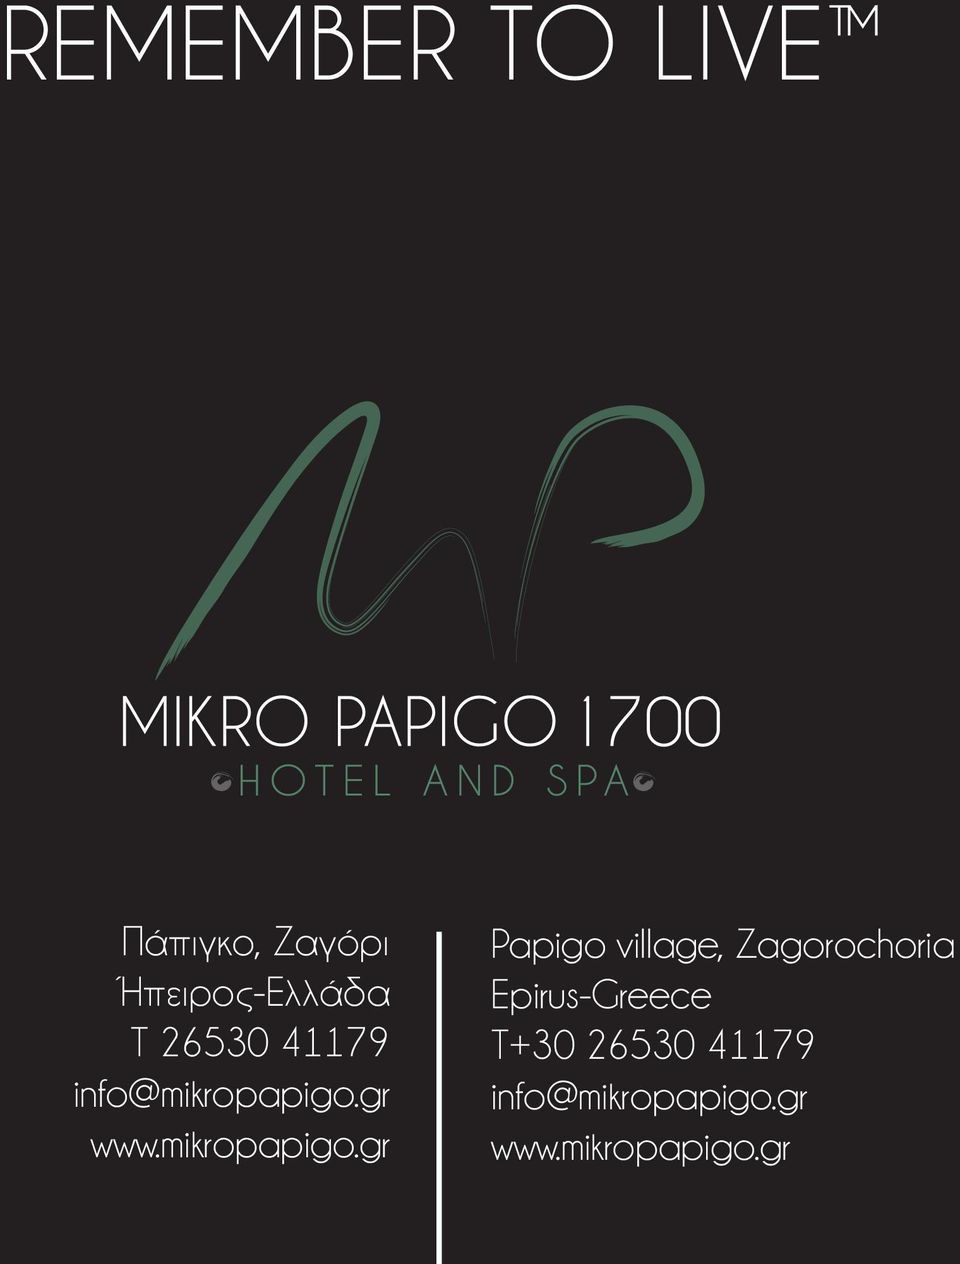 gr www.mikropapigo.